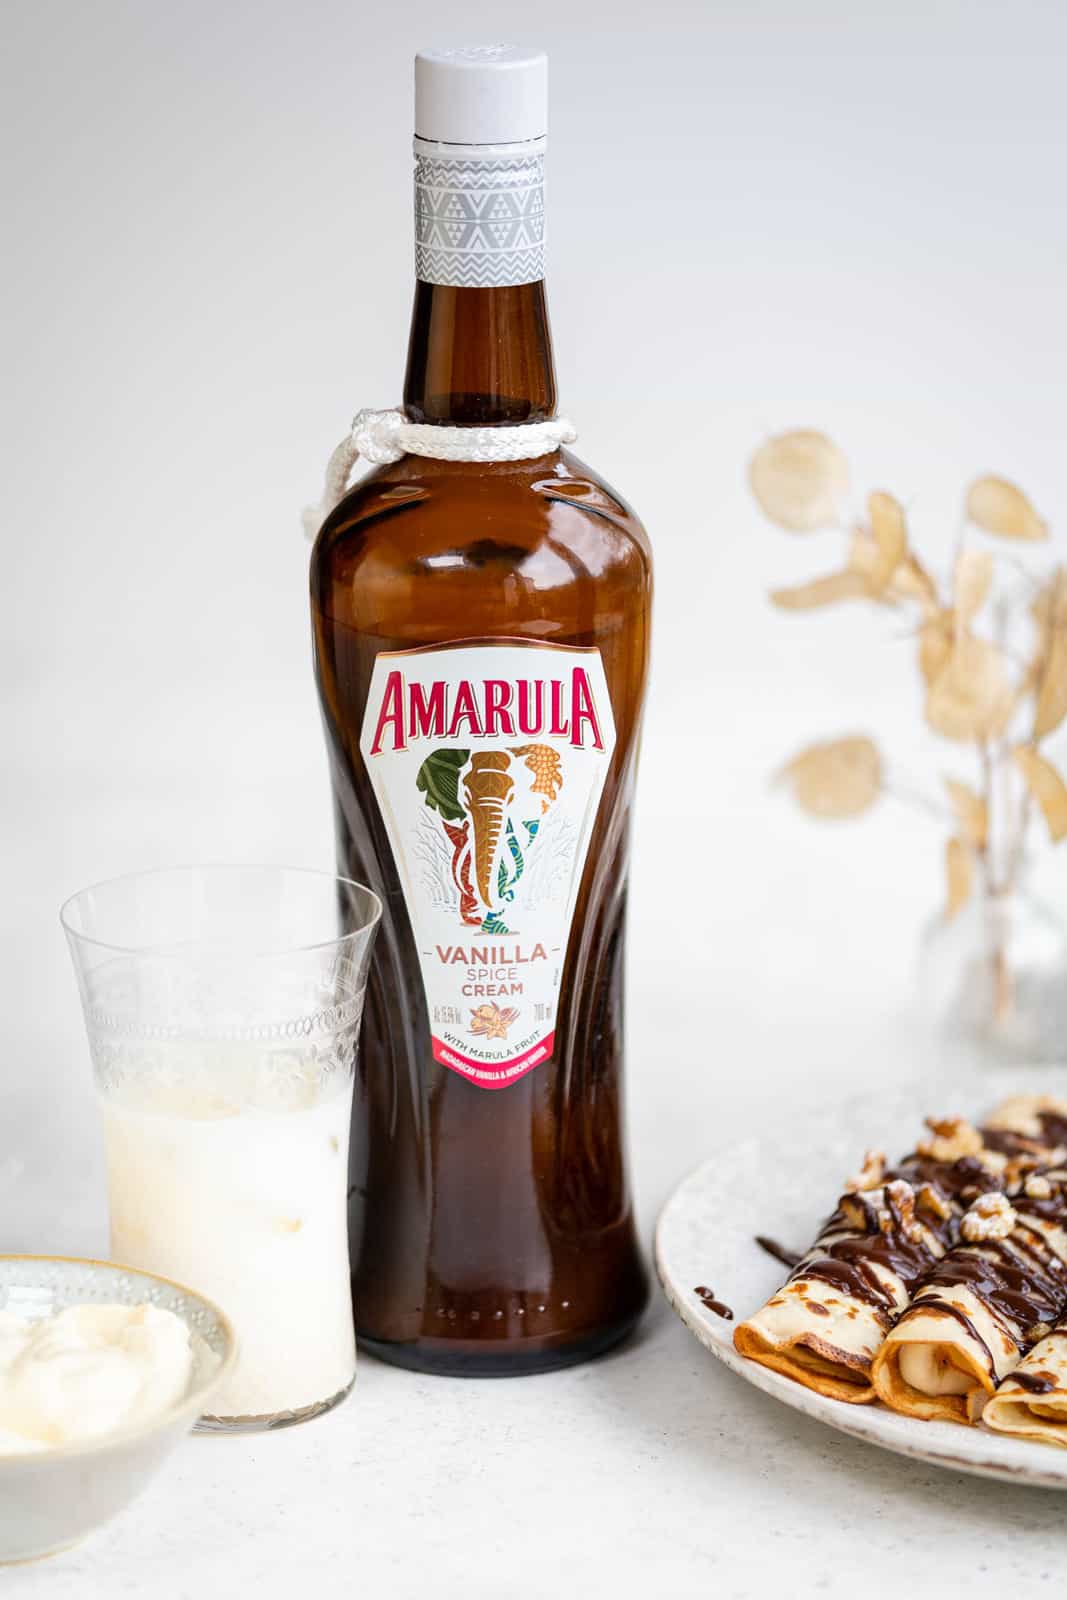 Bottle of Amarula Vanilla Spice Cream